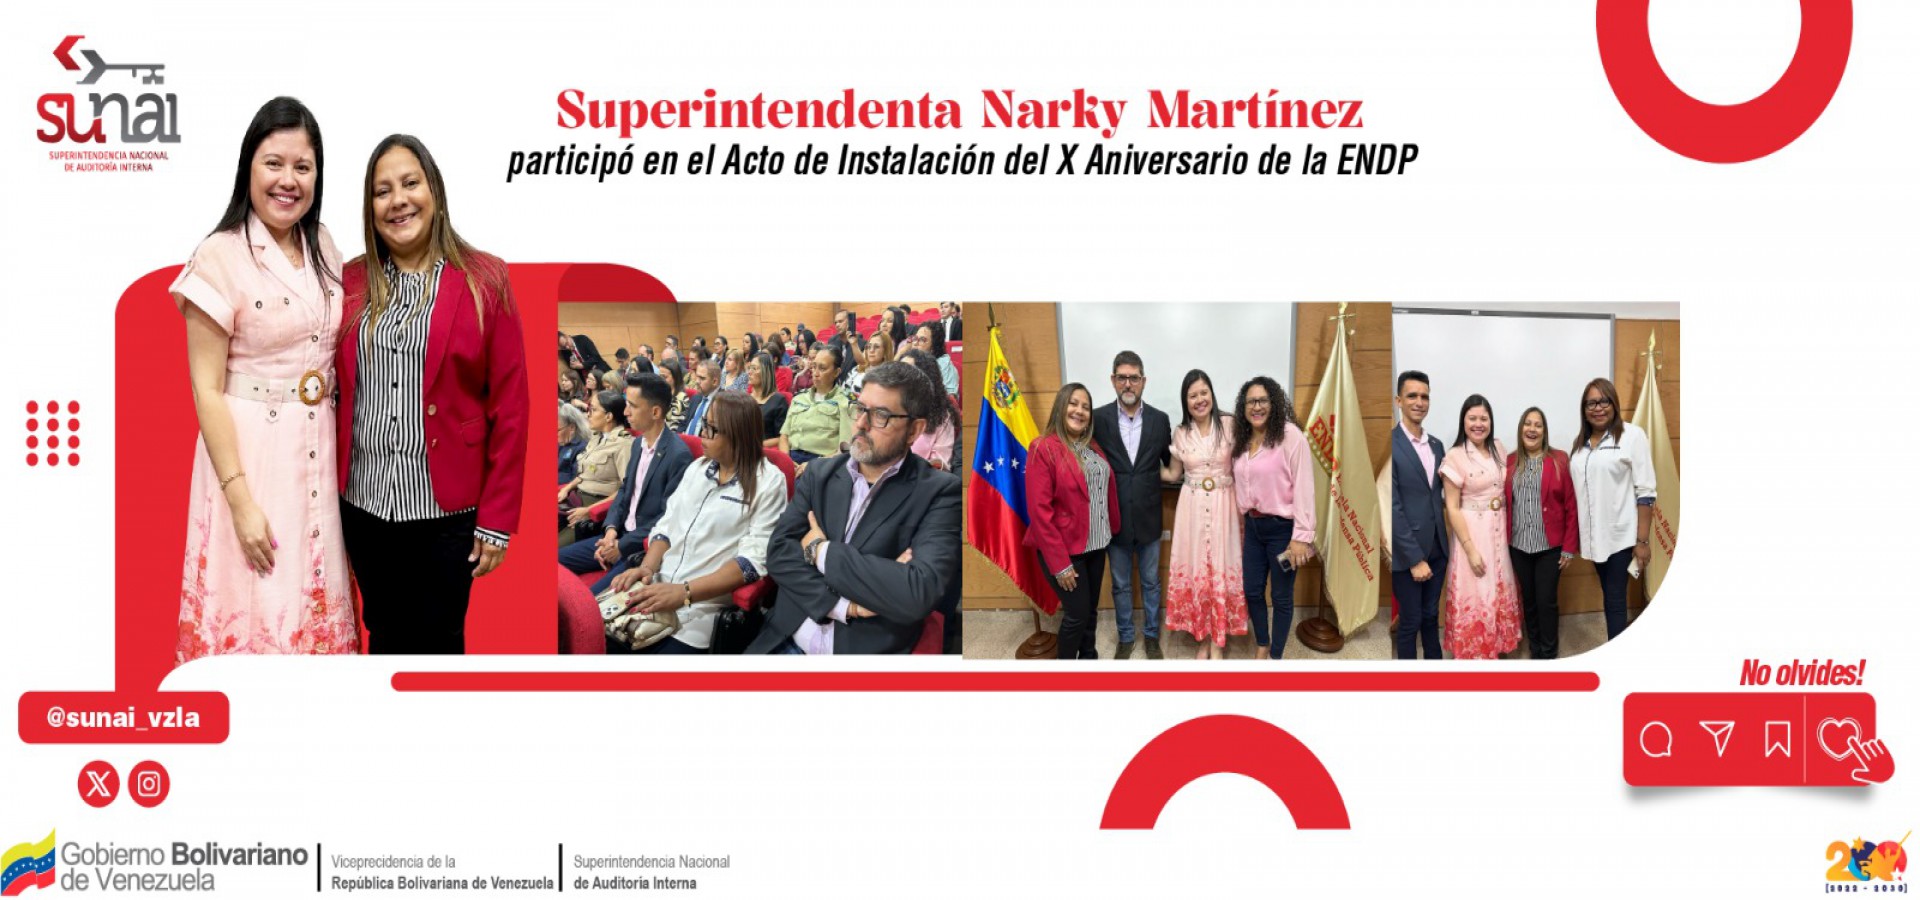 Superintendenta Narky Martínez participó en el Acto de Instalación del X Aniversario de la ENDP